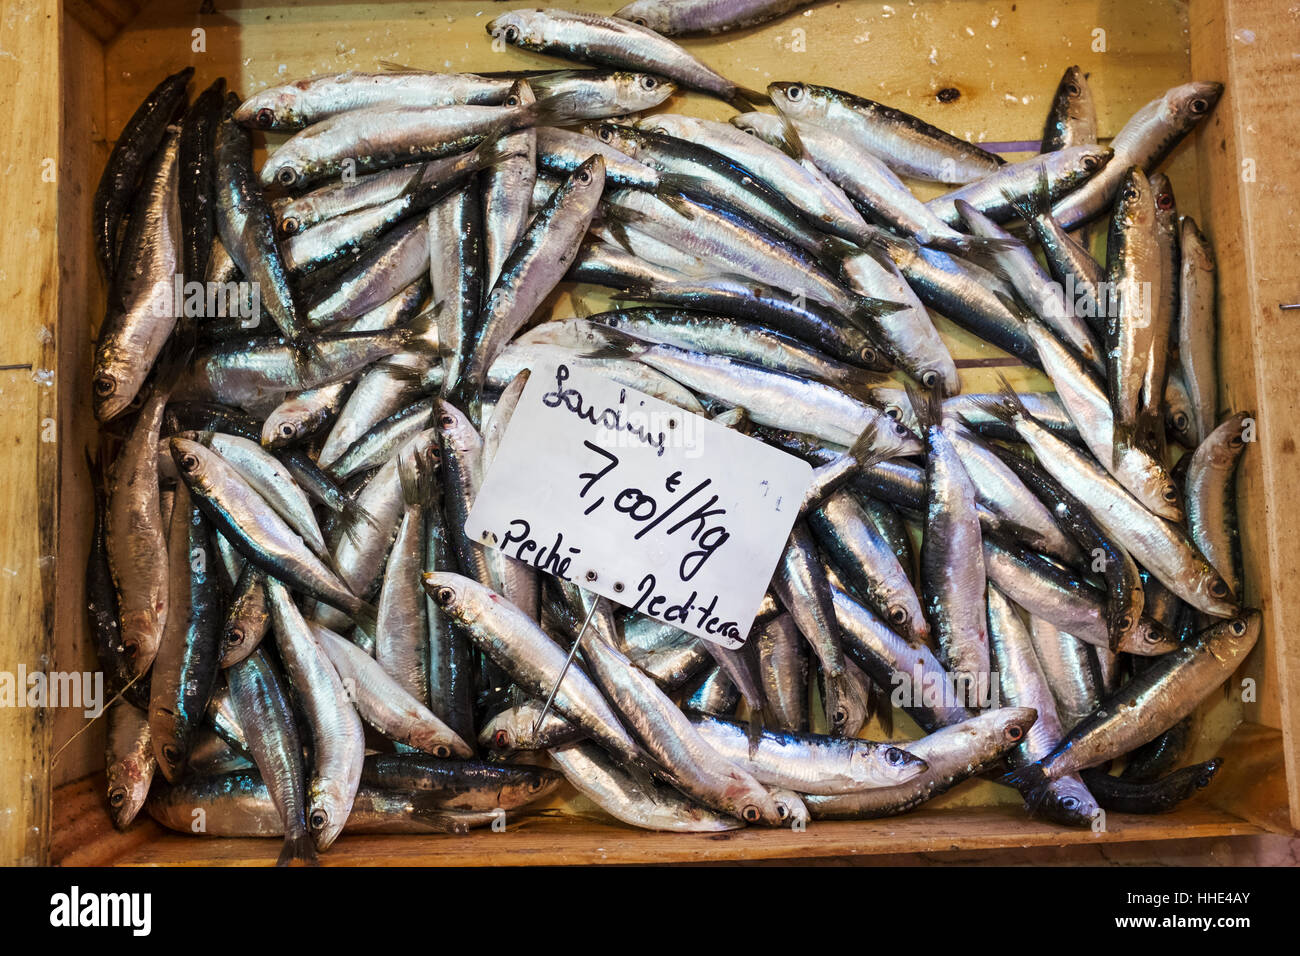 Eine Darstellung der Frischfisch auf Eis auf einem Marktstand. Stockfoto